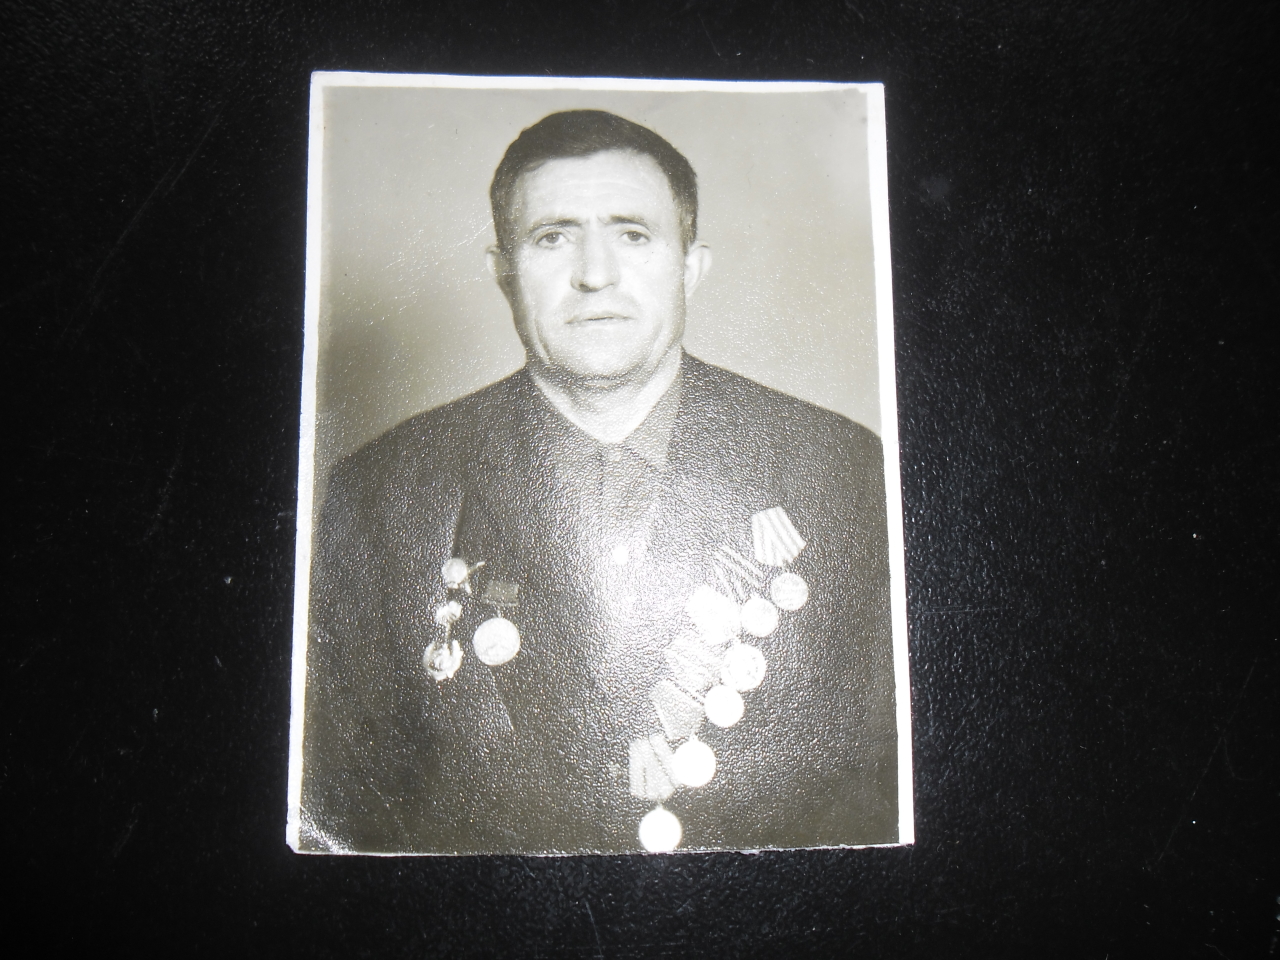 Լուսանկար՝ Հովհաննես Գեղամի Գրիգորյանի (Հայրենական պատերազմի մասնակից)